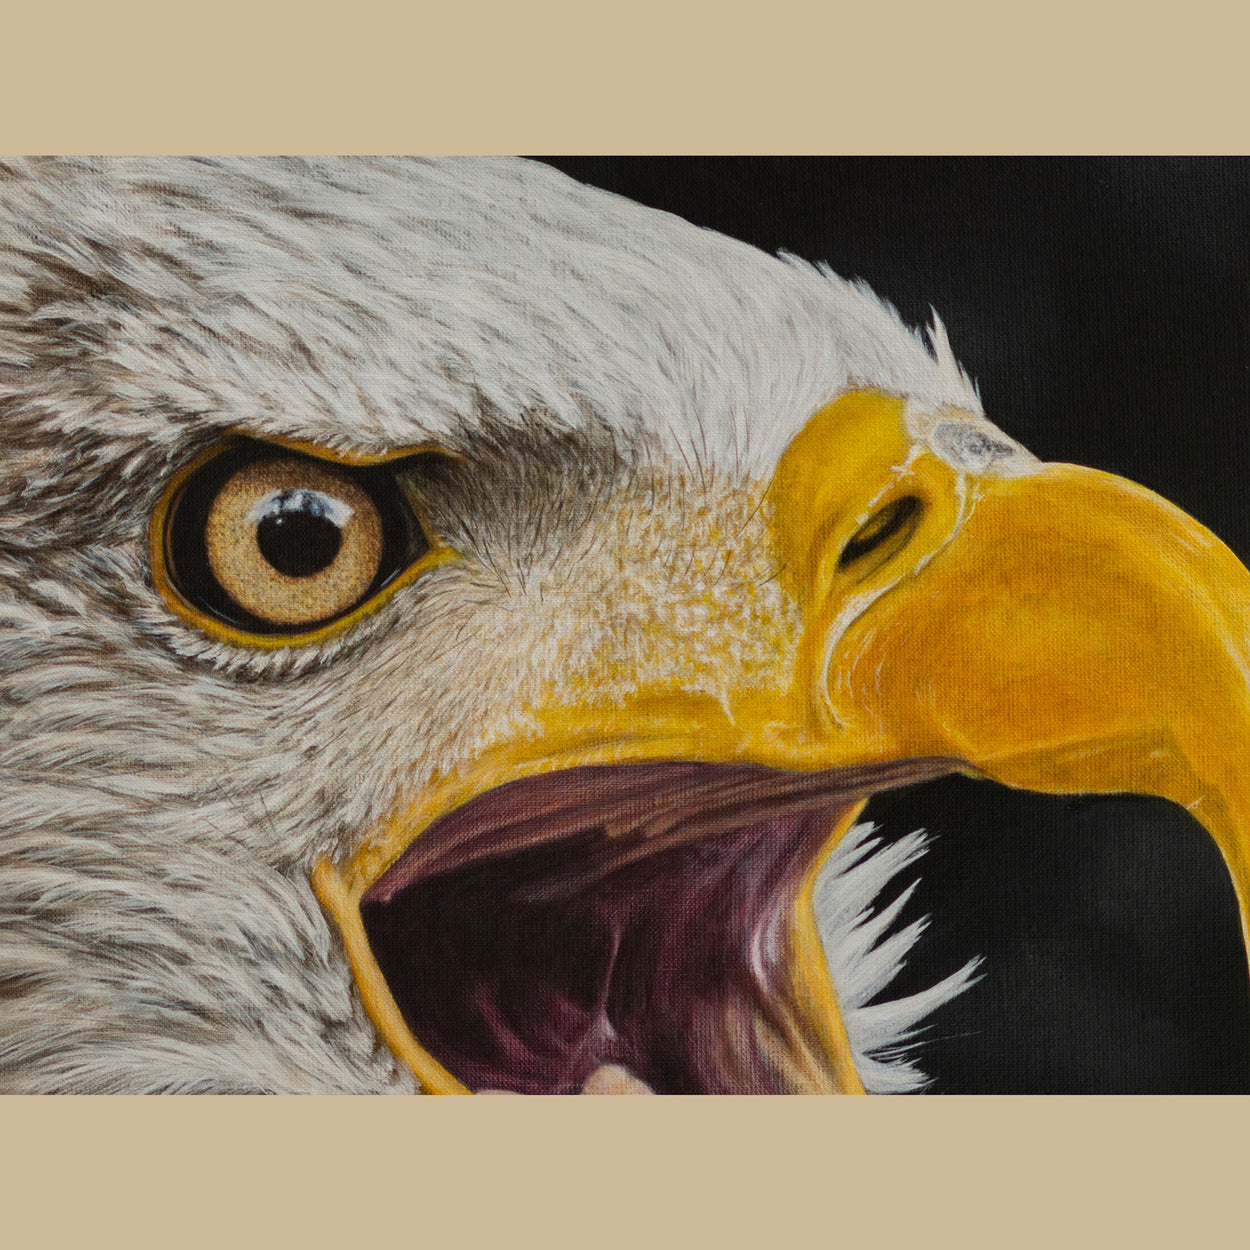 Bald Eagle Painting Close-up1 - Jill Dimond Bird Artist